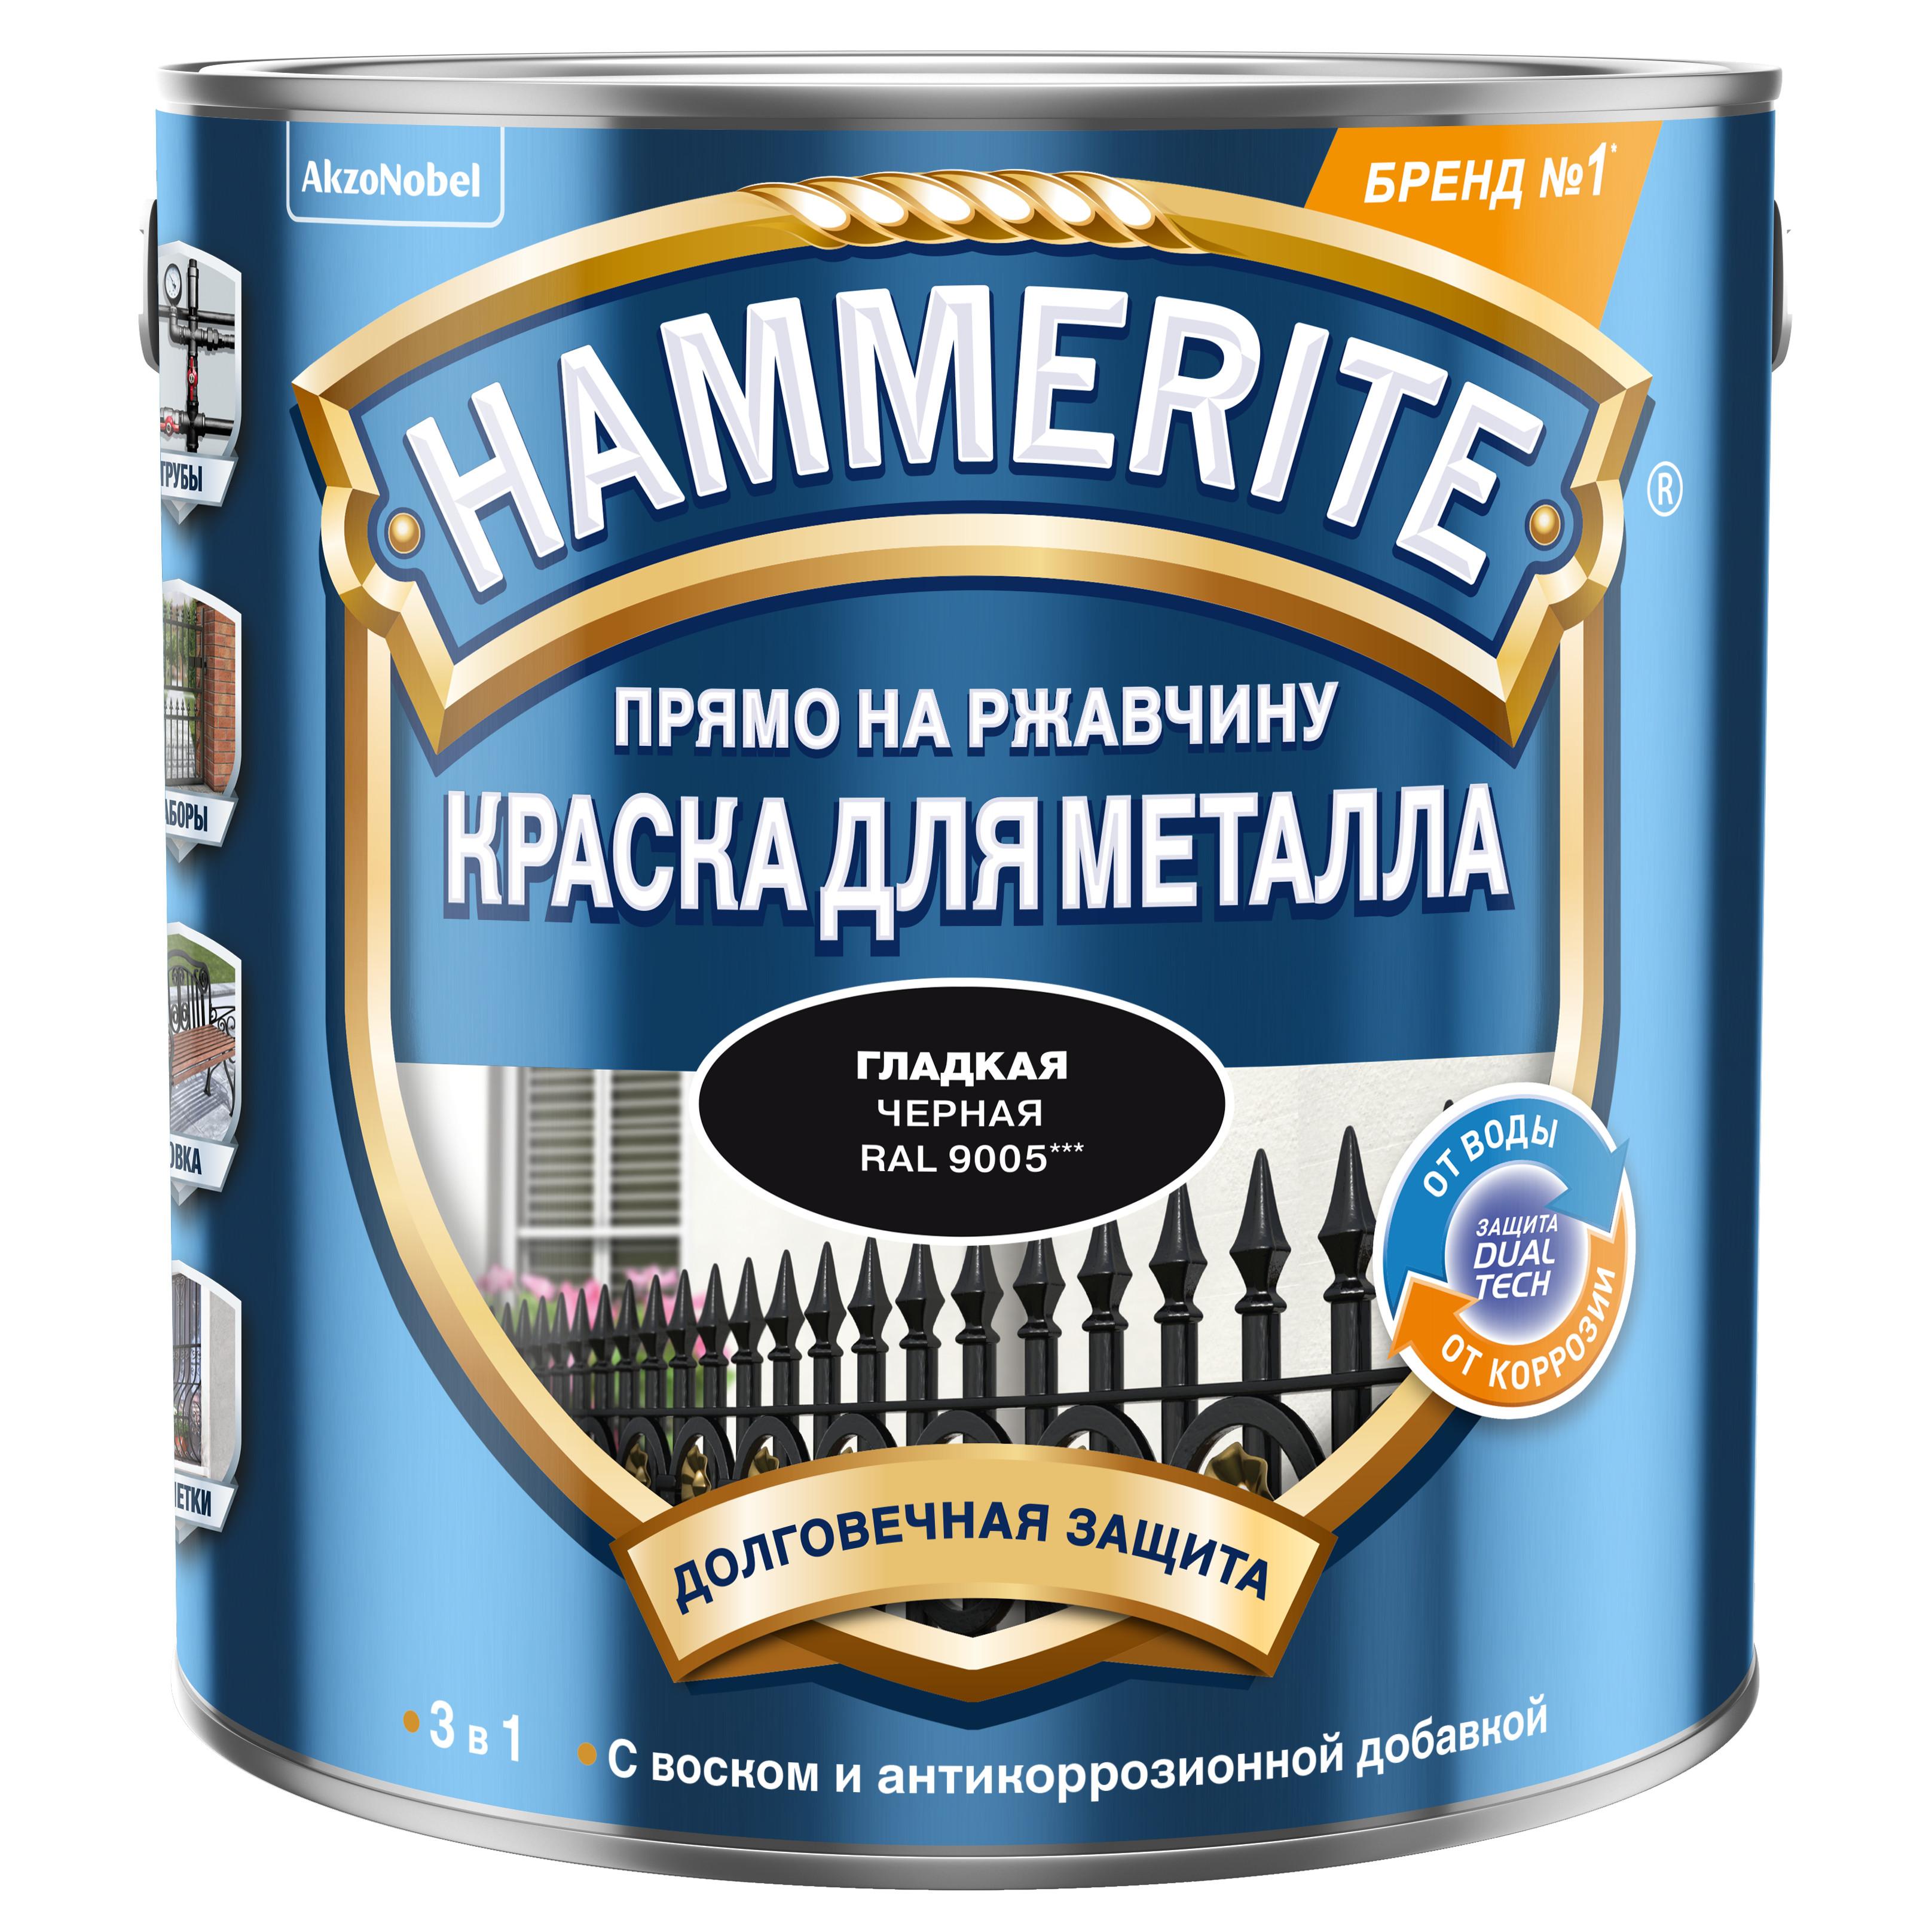 Гладкая эмаль Hammerite smooth по ржавчине, синяя 0,75л 5093829